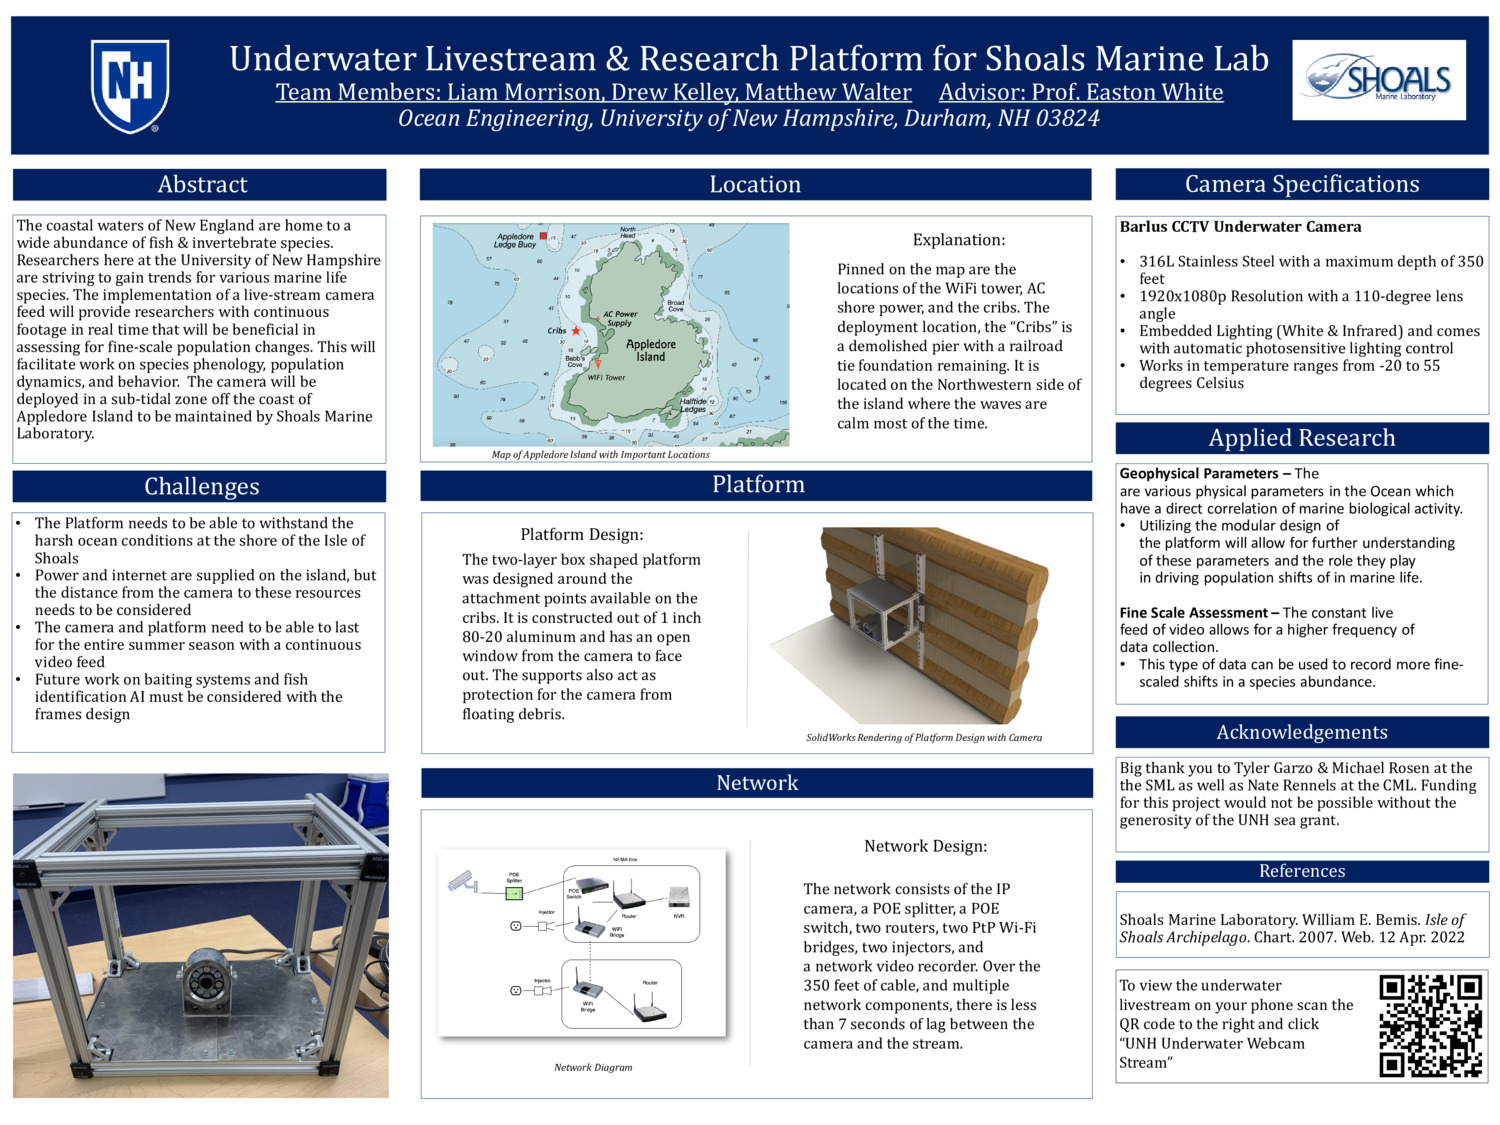 Underwater Livestream & Research Platform For Shoals Marine Lab by drewkelley